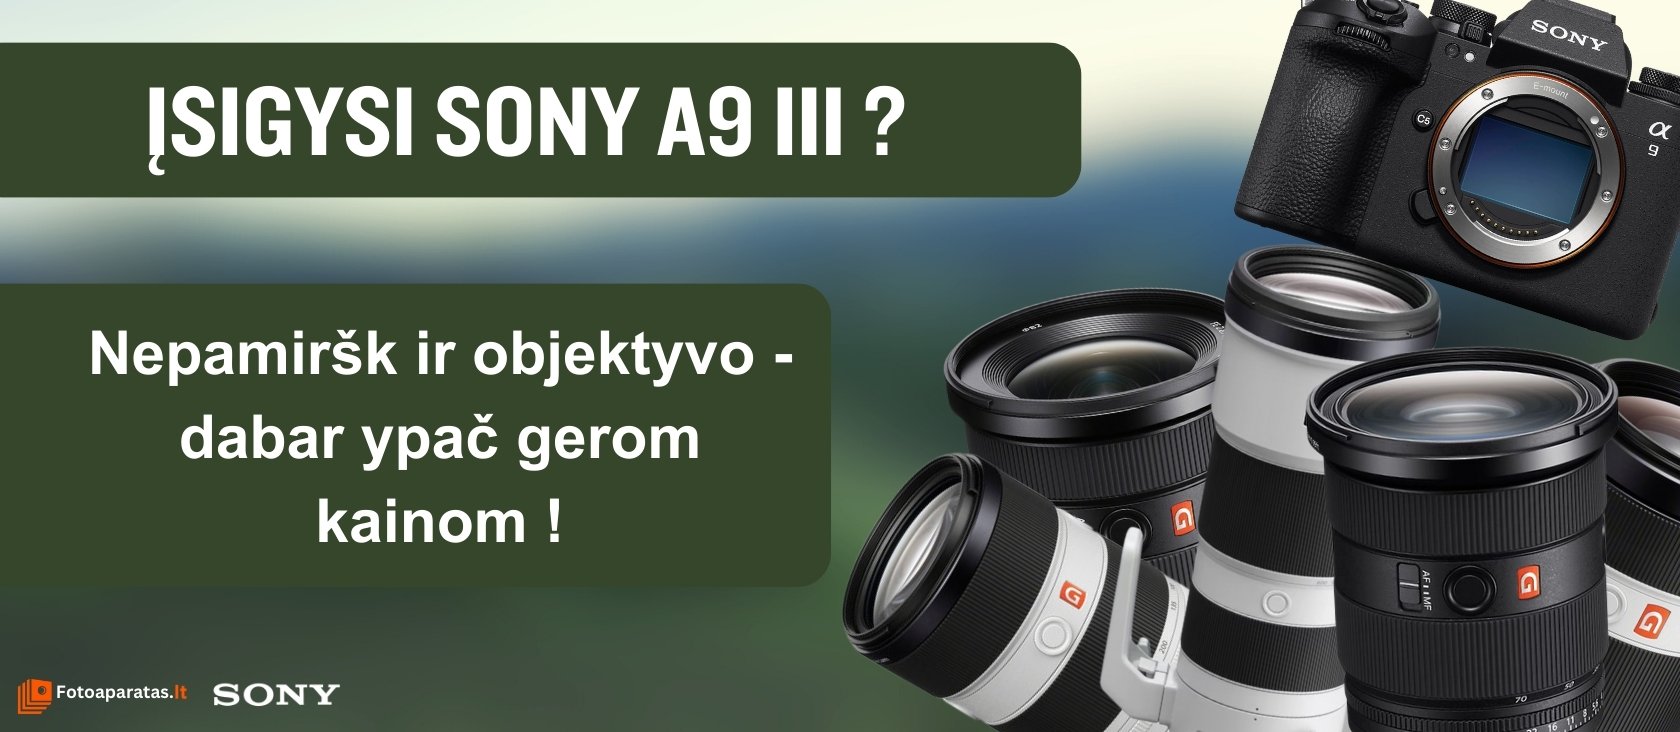 Ruošiesi įsigyti fotoaparatą Sony A9 III? Nepamiršk ir objektyvo - dabar itin gerom kainom!!!